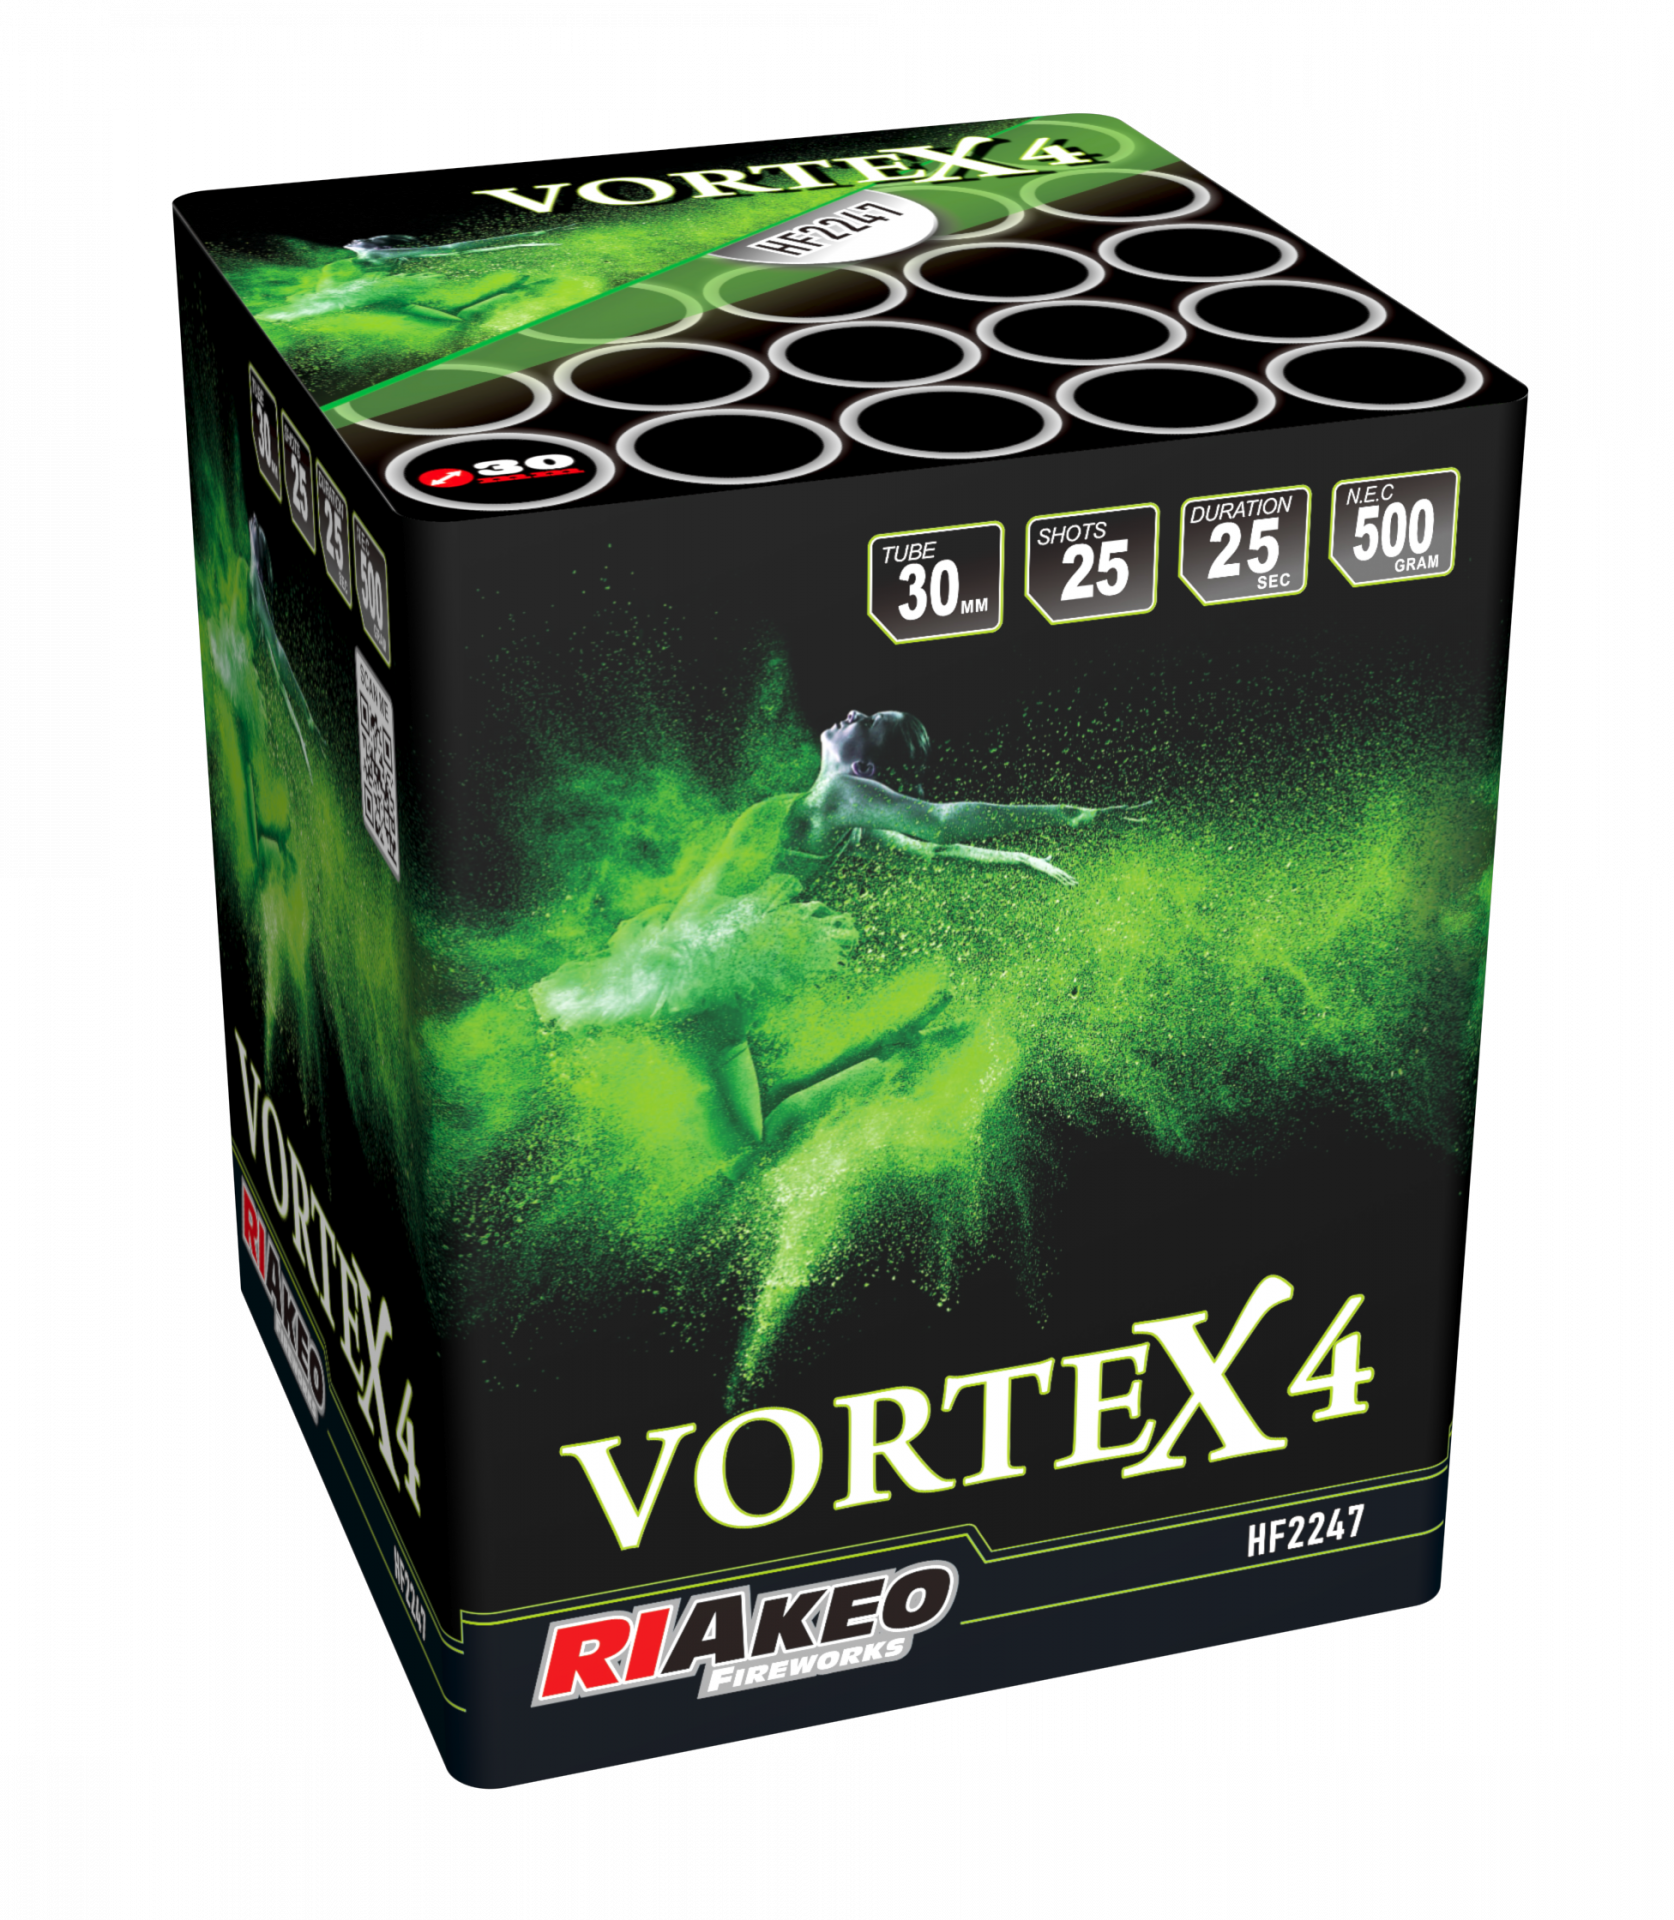 Riakeo Vortex 4